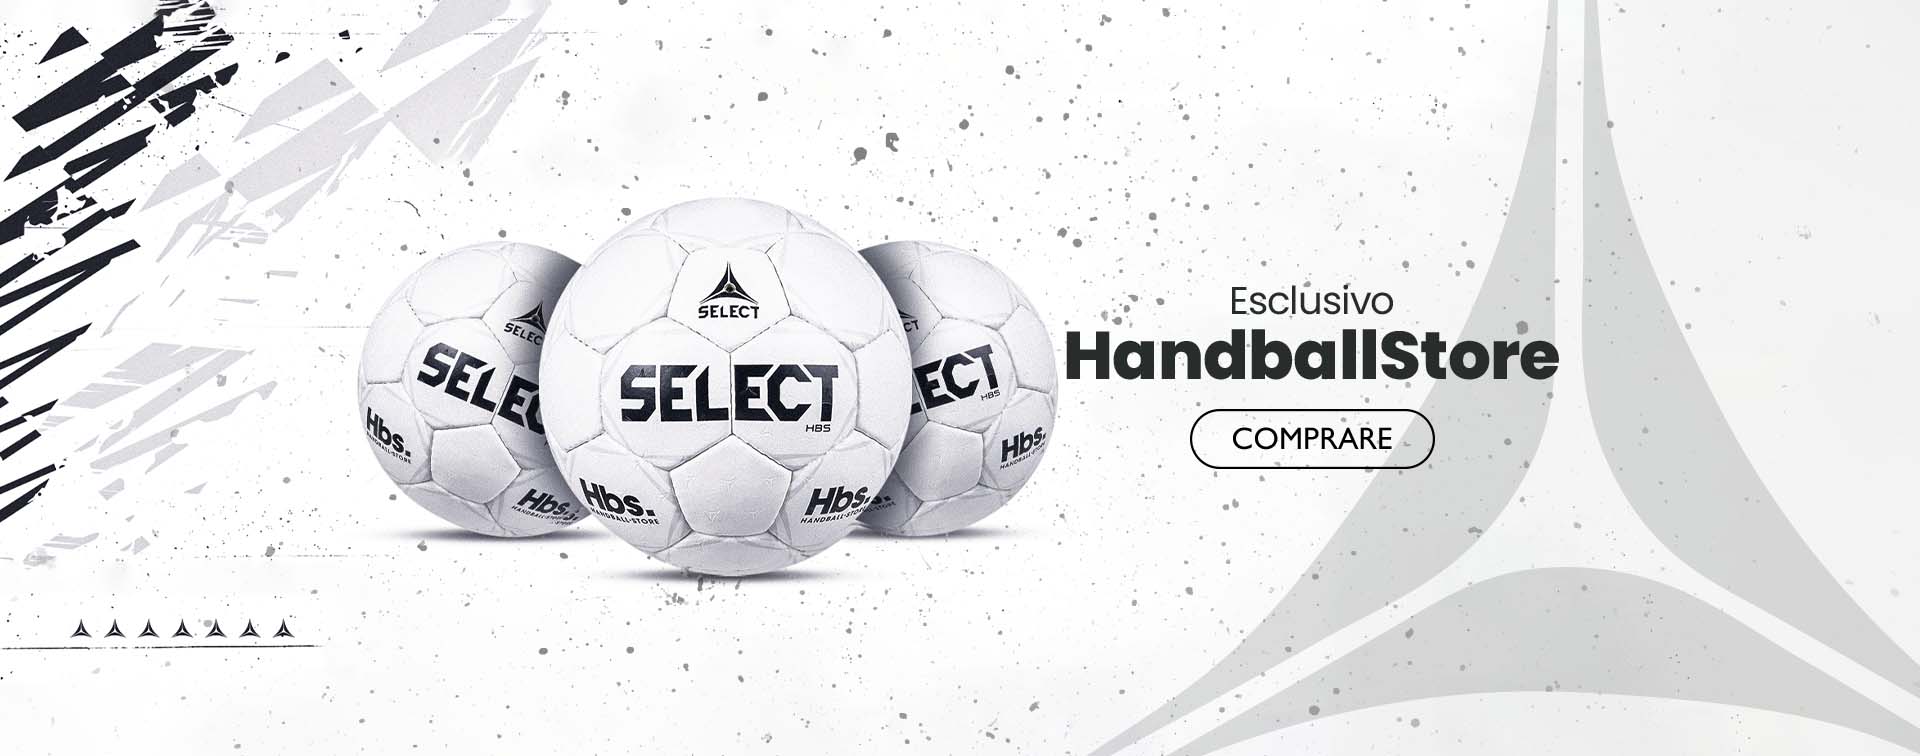 Select handball